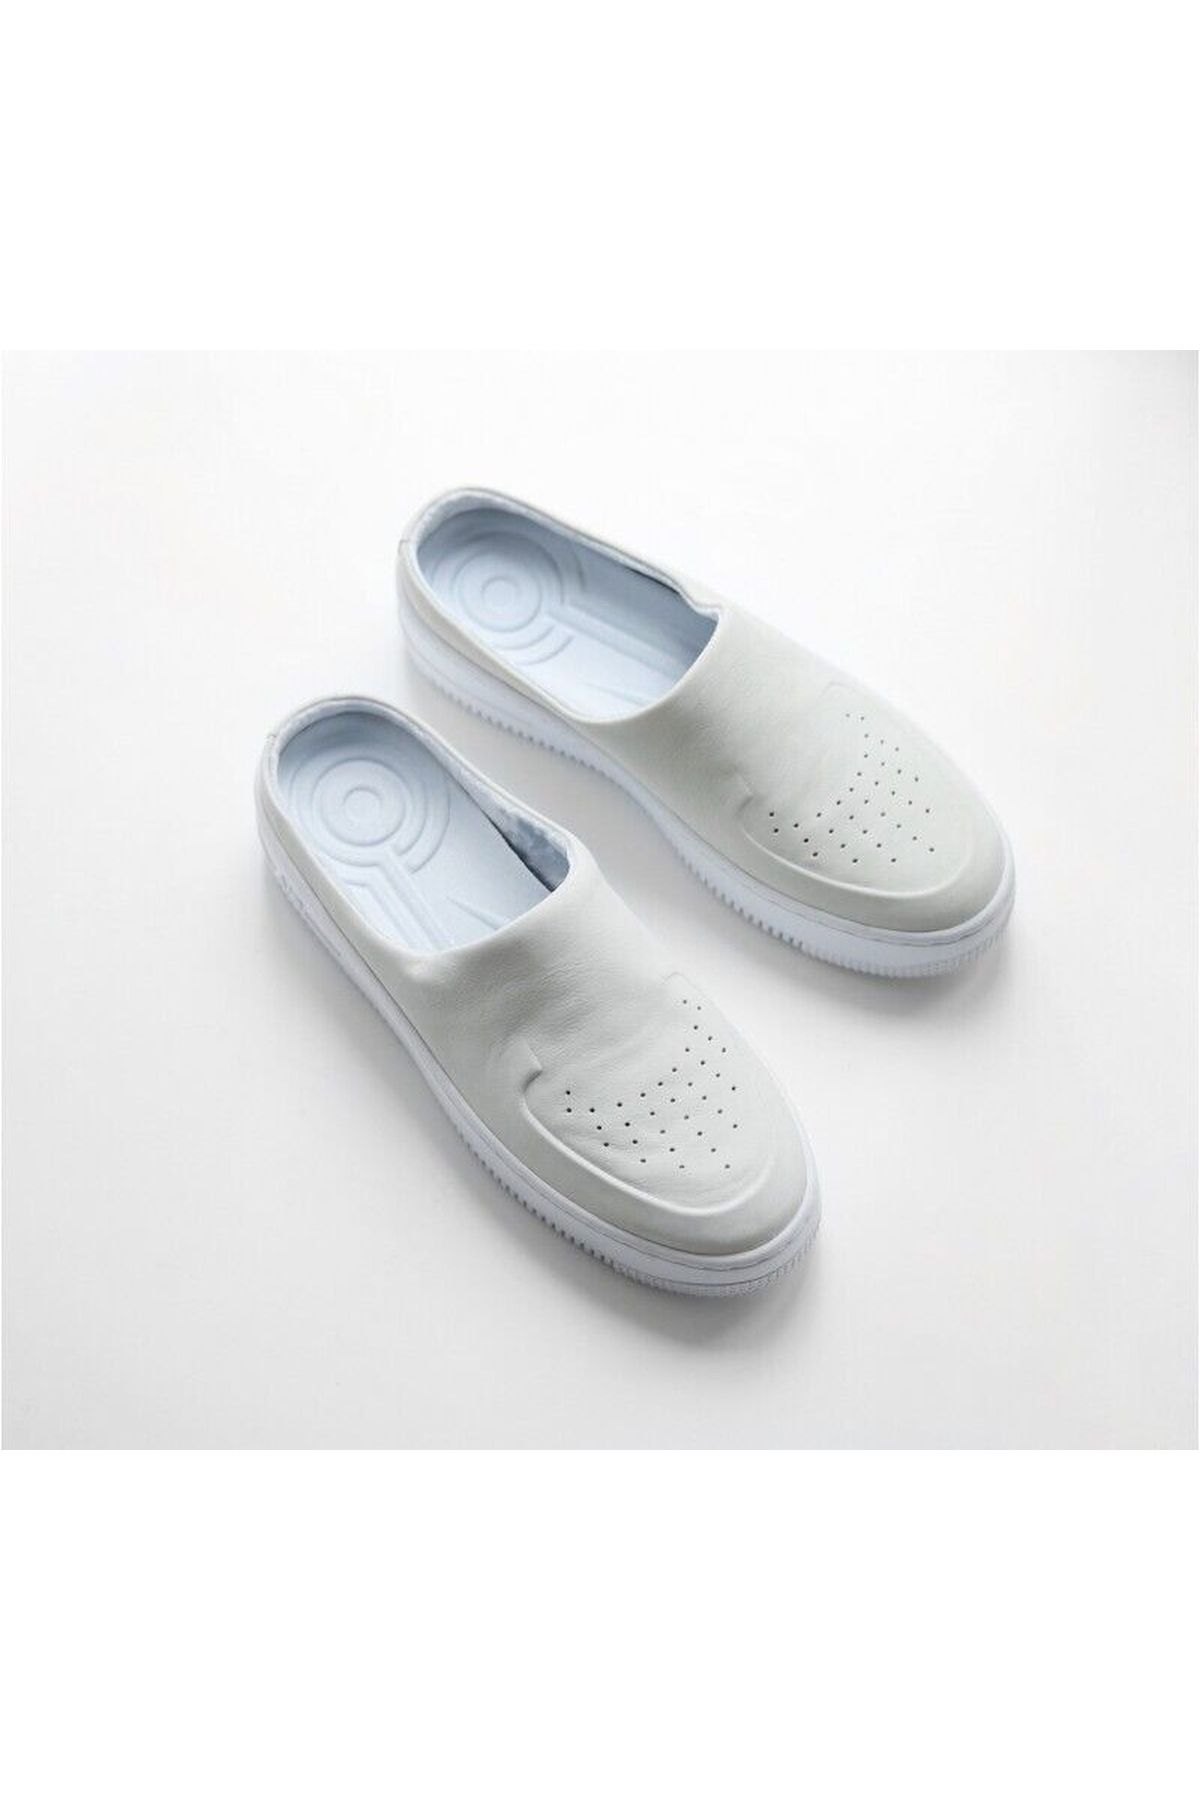 Nike Air Force 1 Lover Xx Off White Women's 7.5 Slip On Shoes Sandal Ao1523-100 -altınkılıçspor-